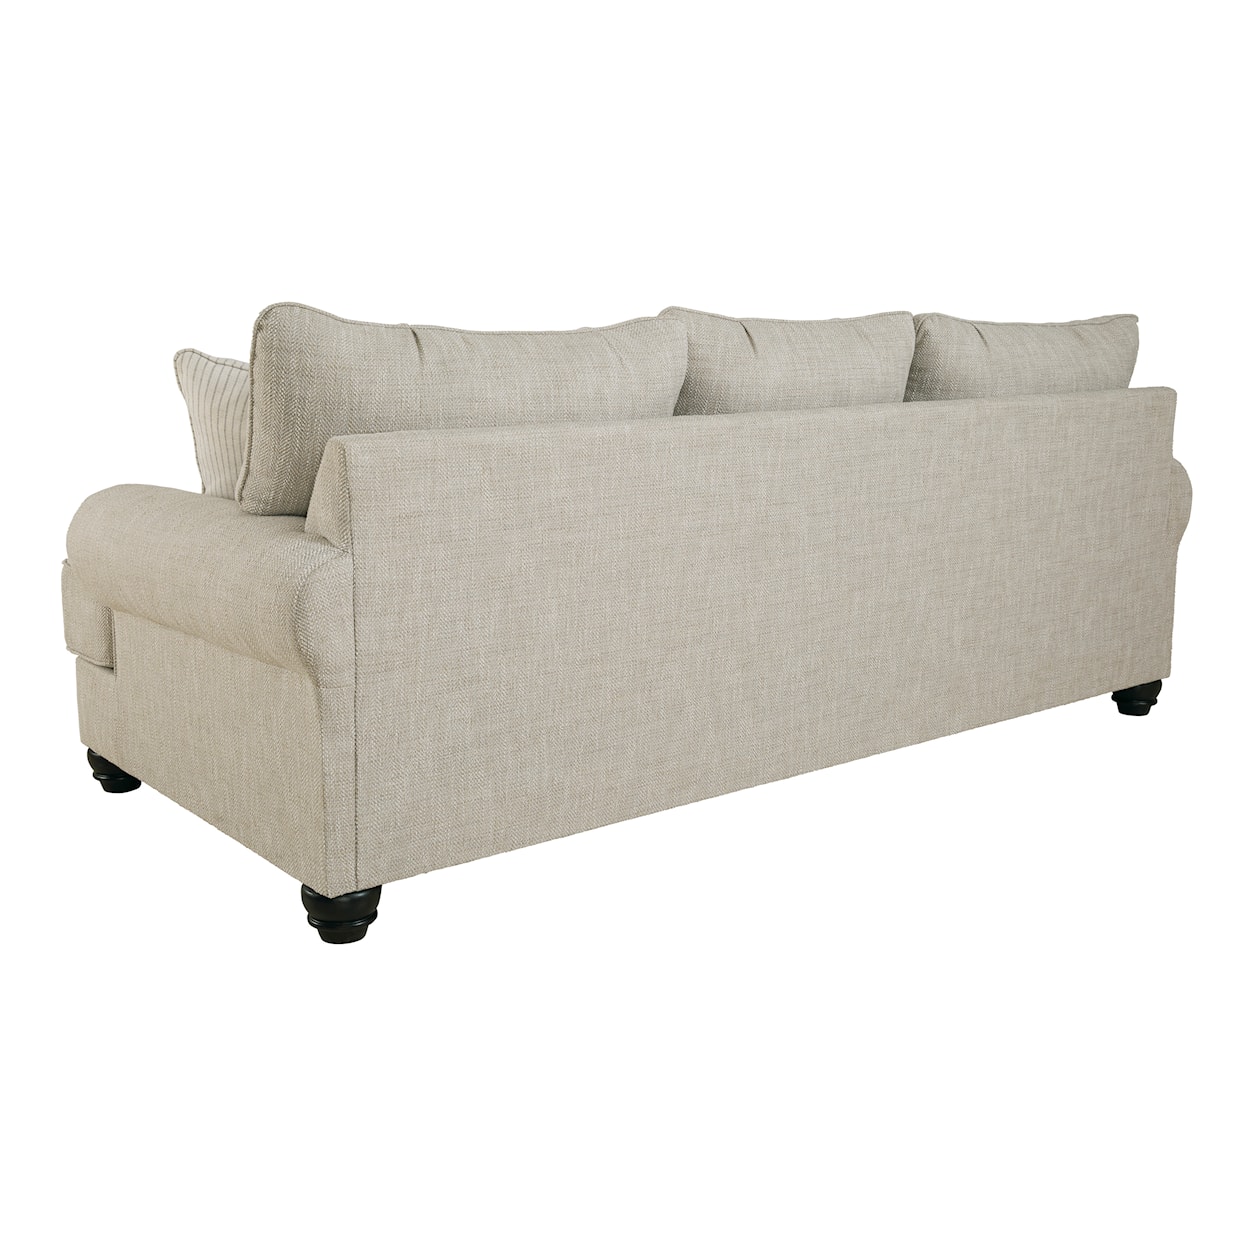 Ashley Furniture Benchcraft Asanti Sofa